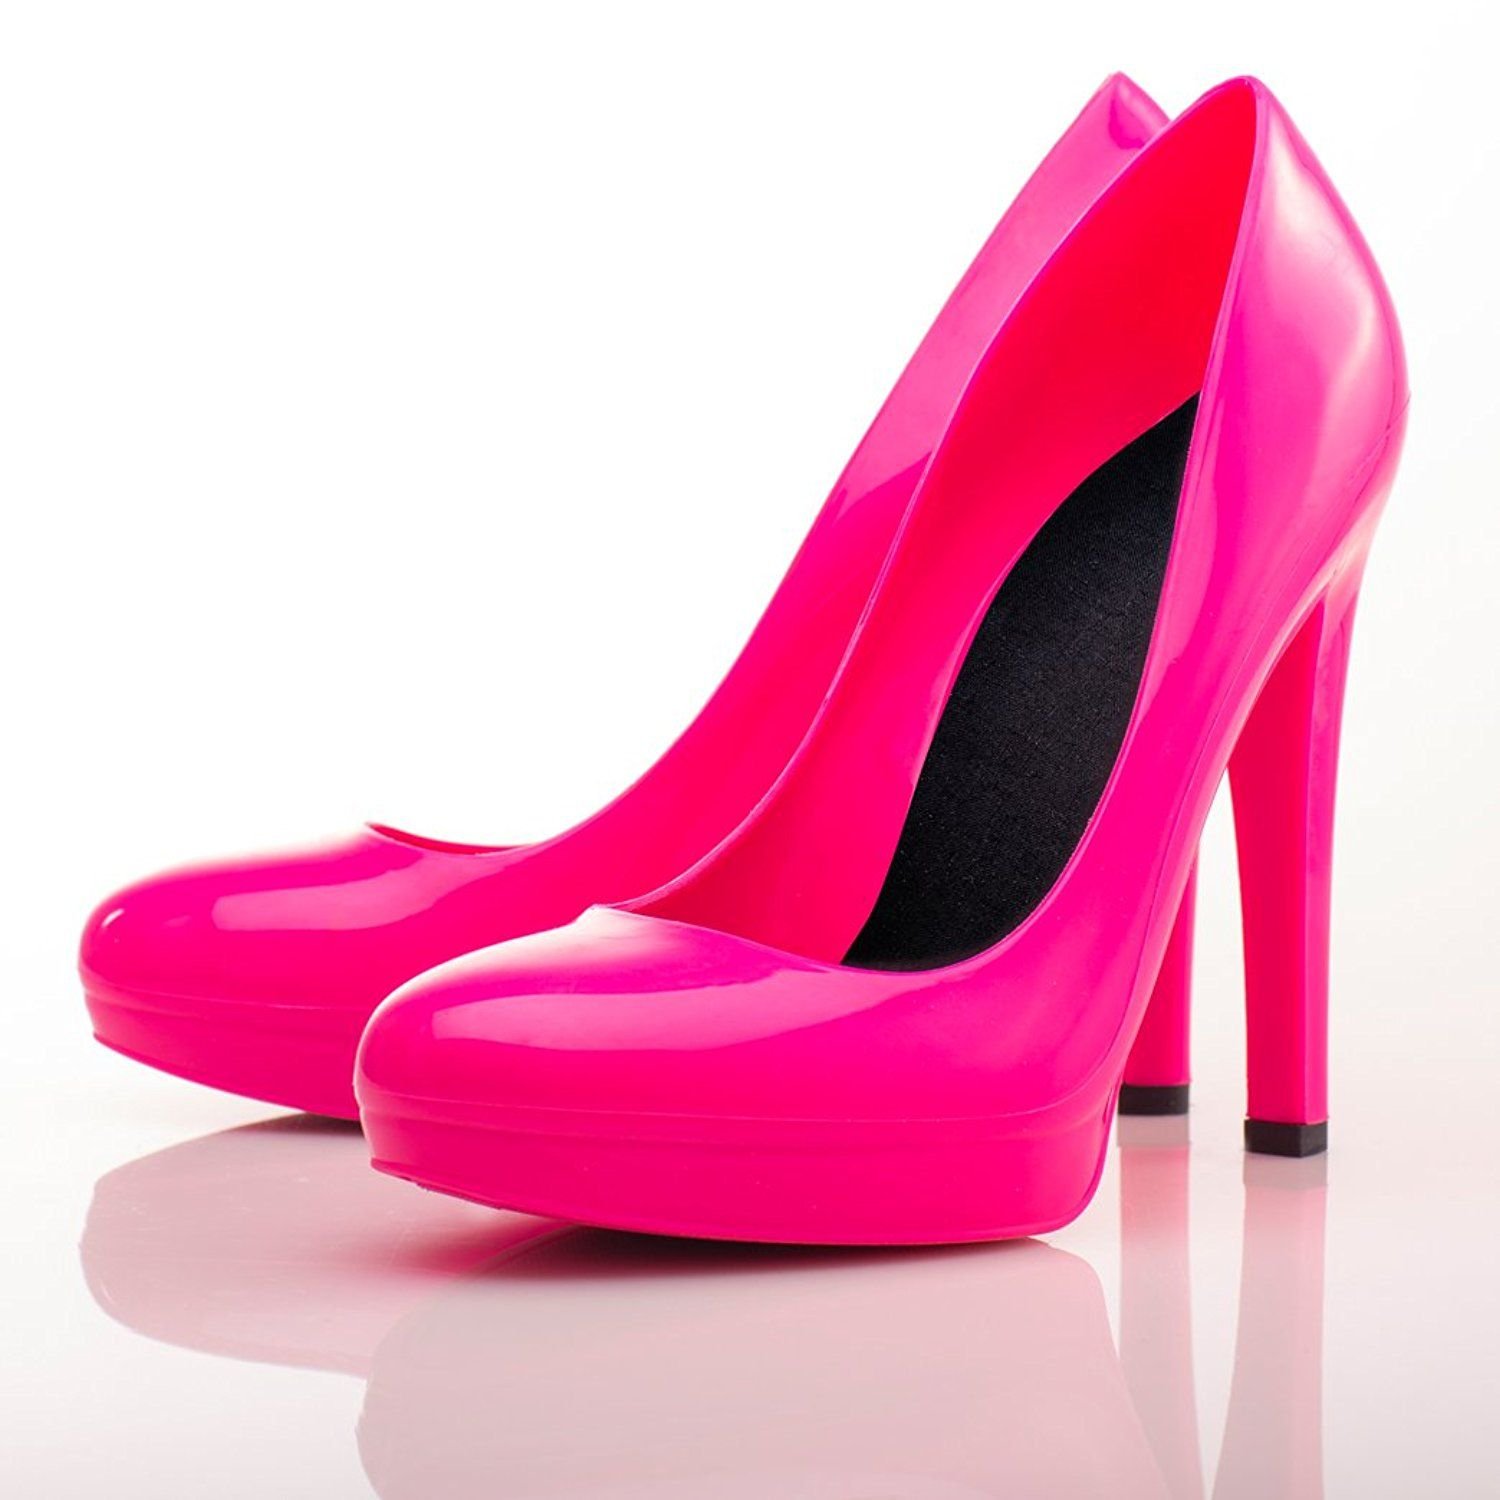 Розовые туфли есть. Туфли розовые. Розовые туфли на платформе. Розовые туфли современные. Розовые туфли сверху.